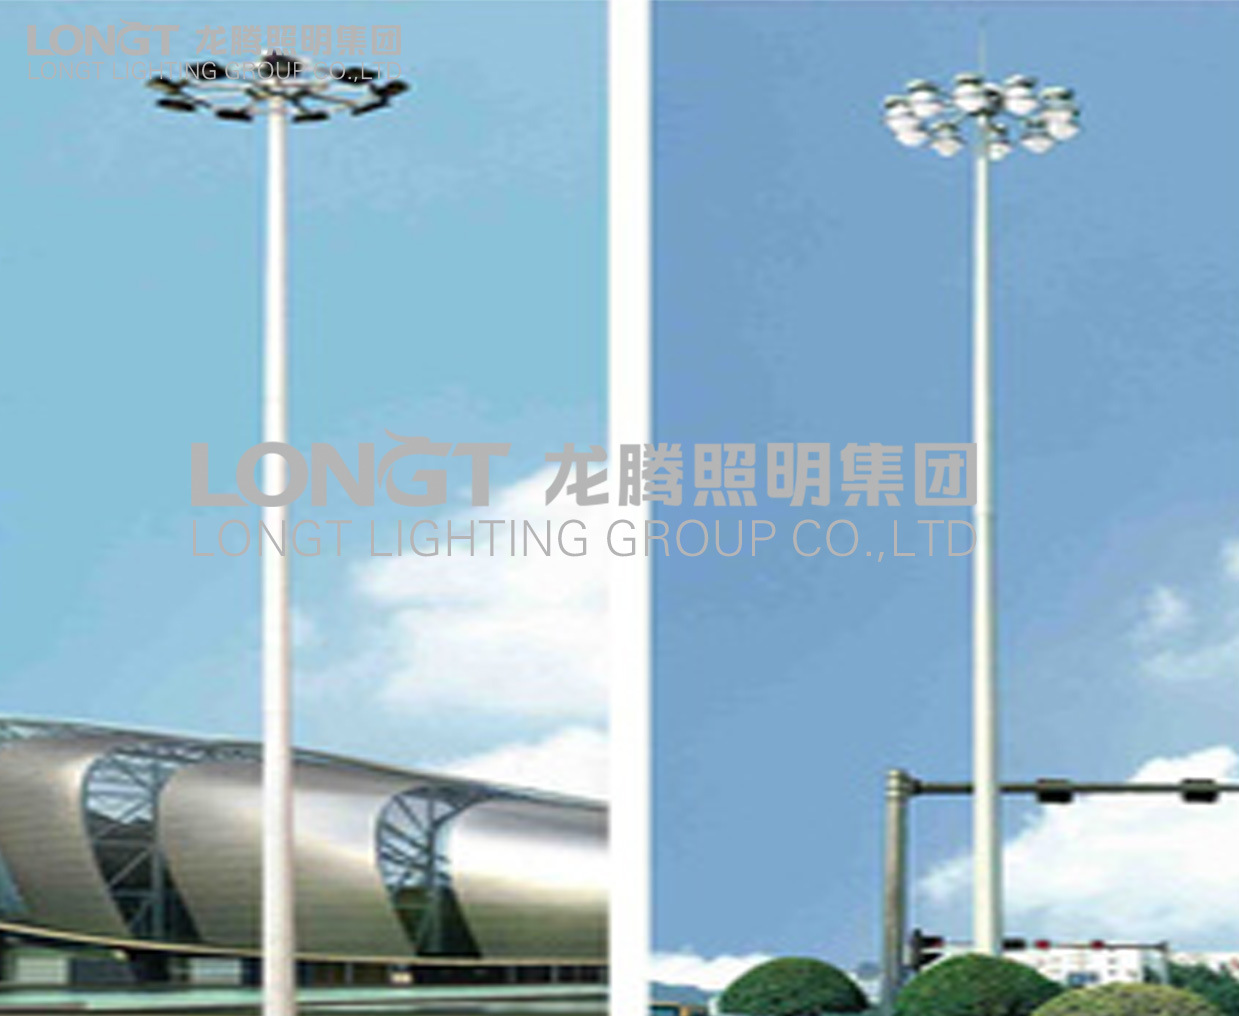 【龙腾照明】供应高杆灯 15-25米高杆灯灯杆 